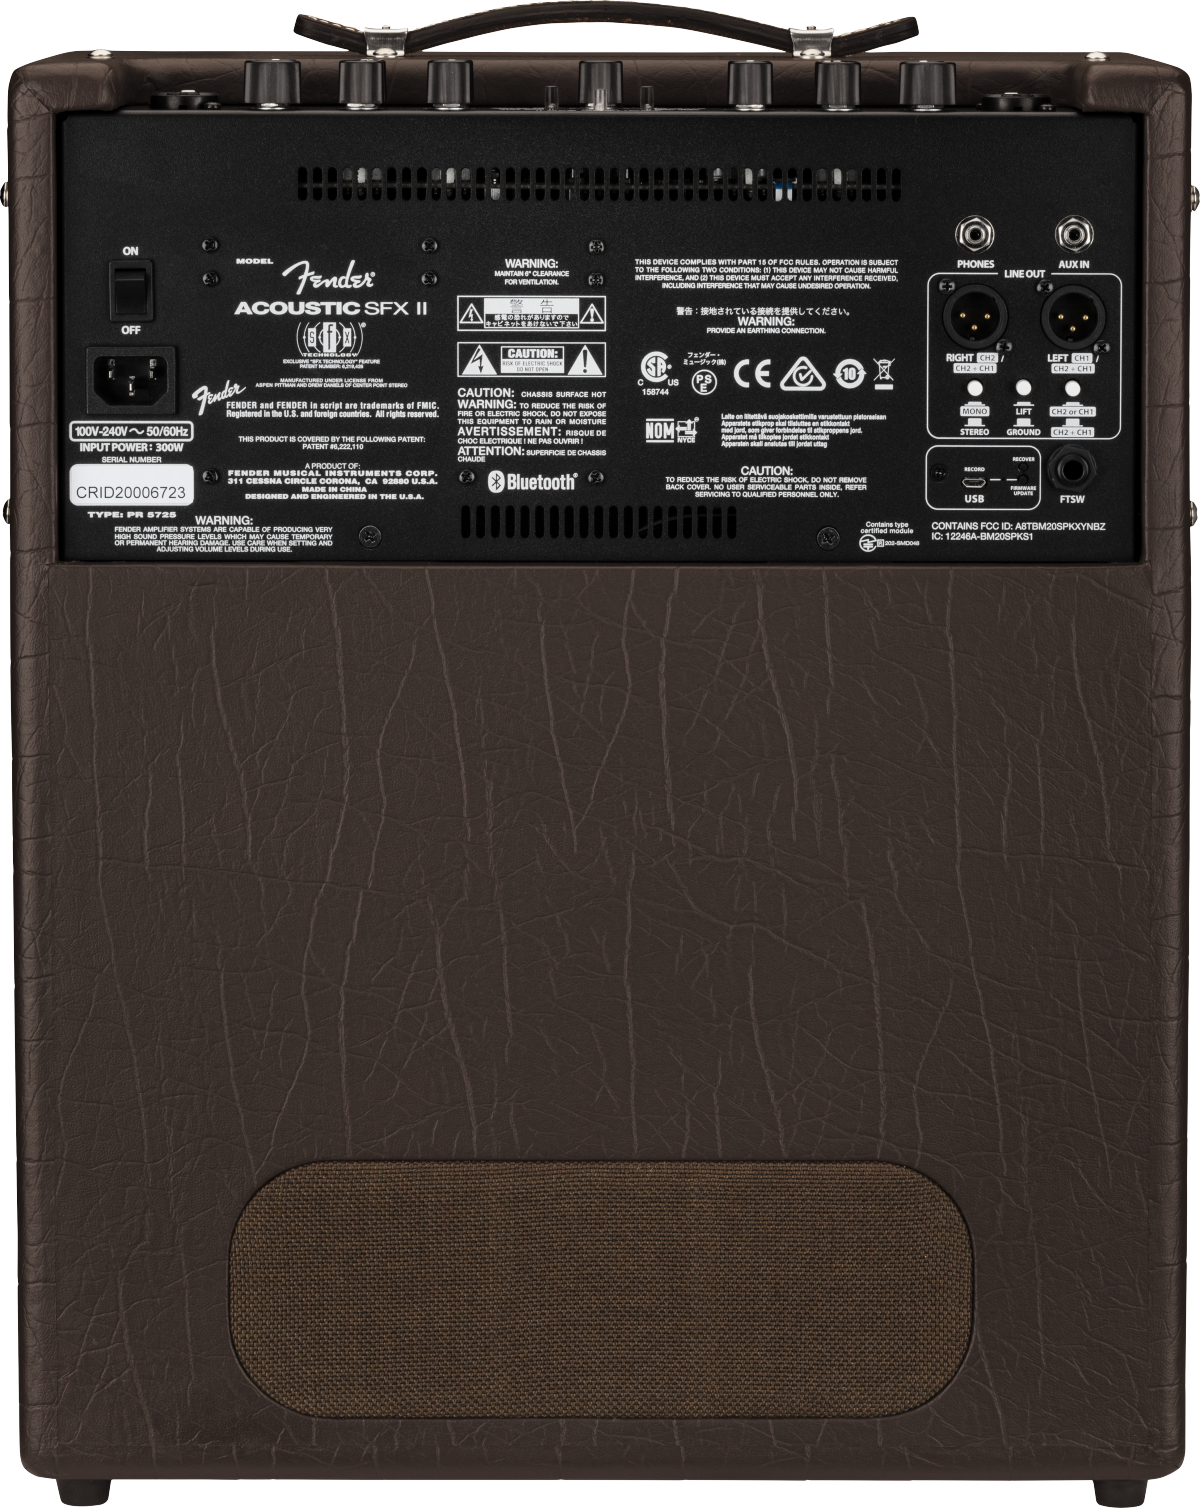 Fender SFX II 200W Acoustic Amplifier